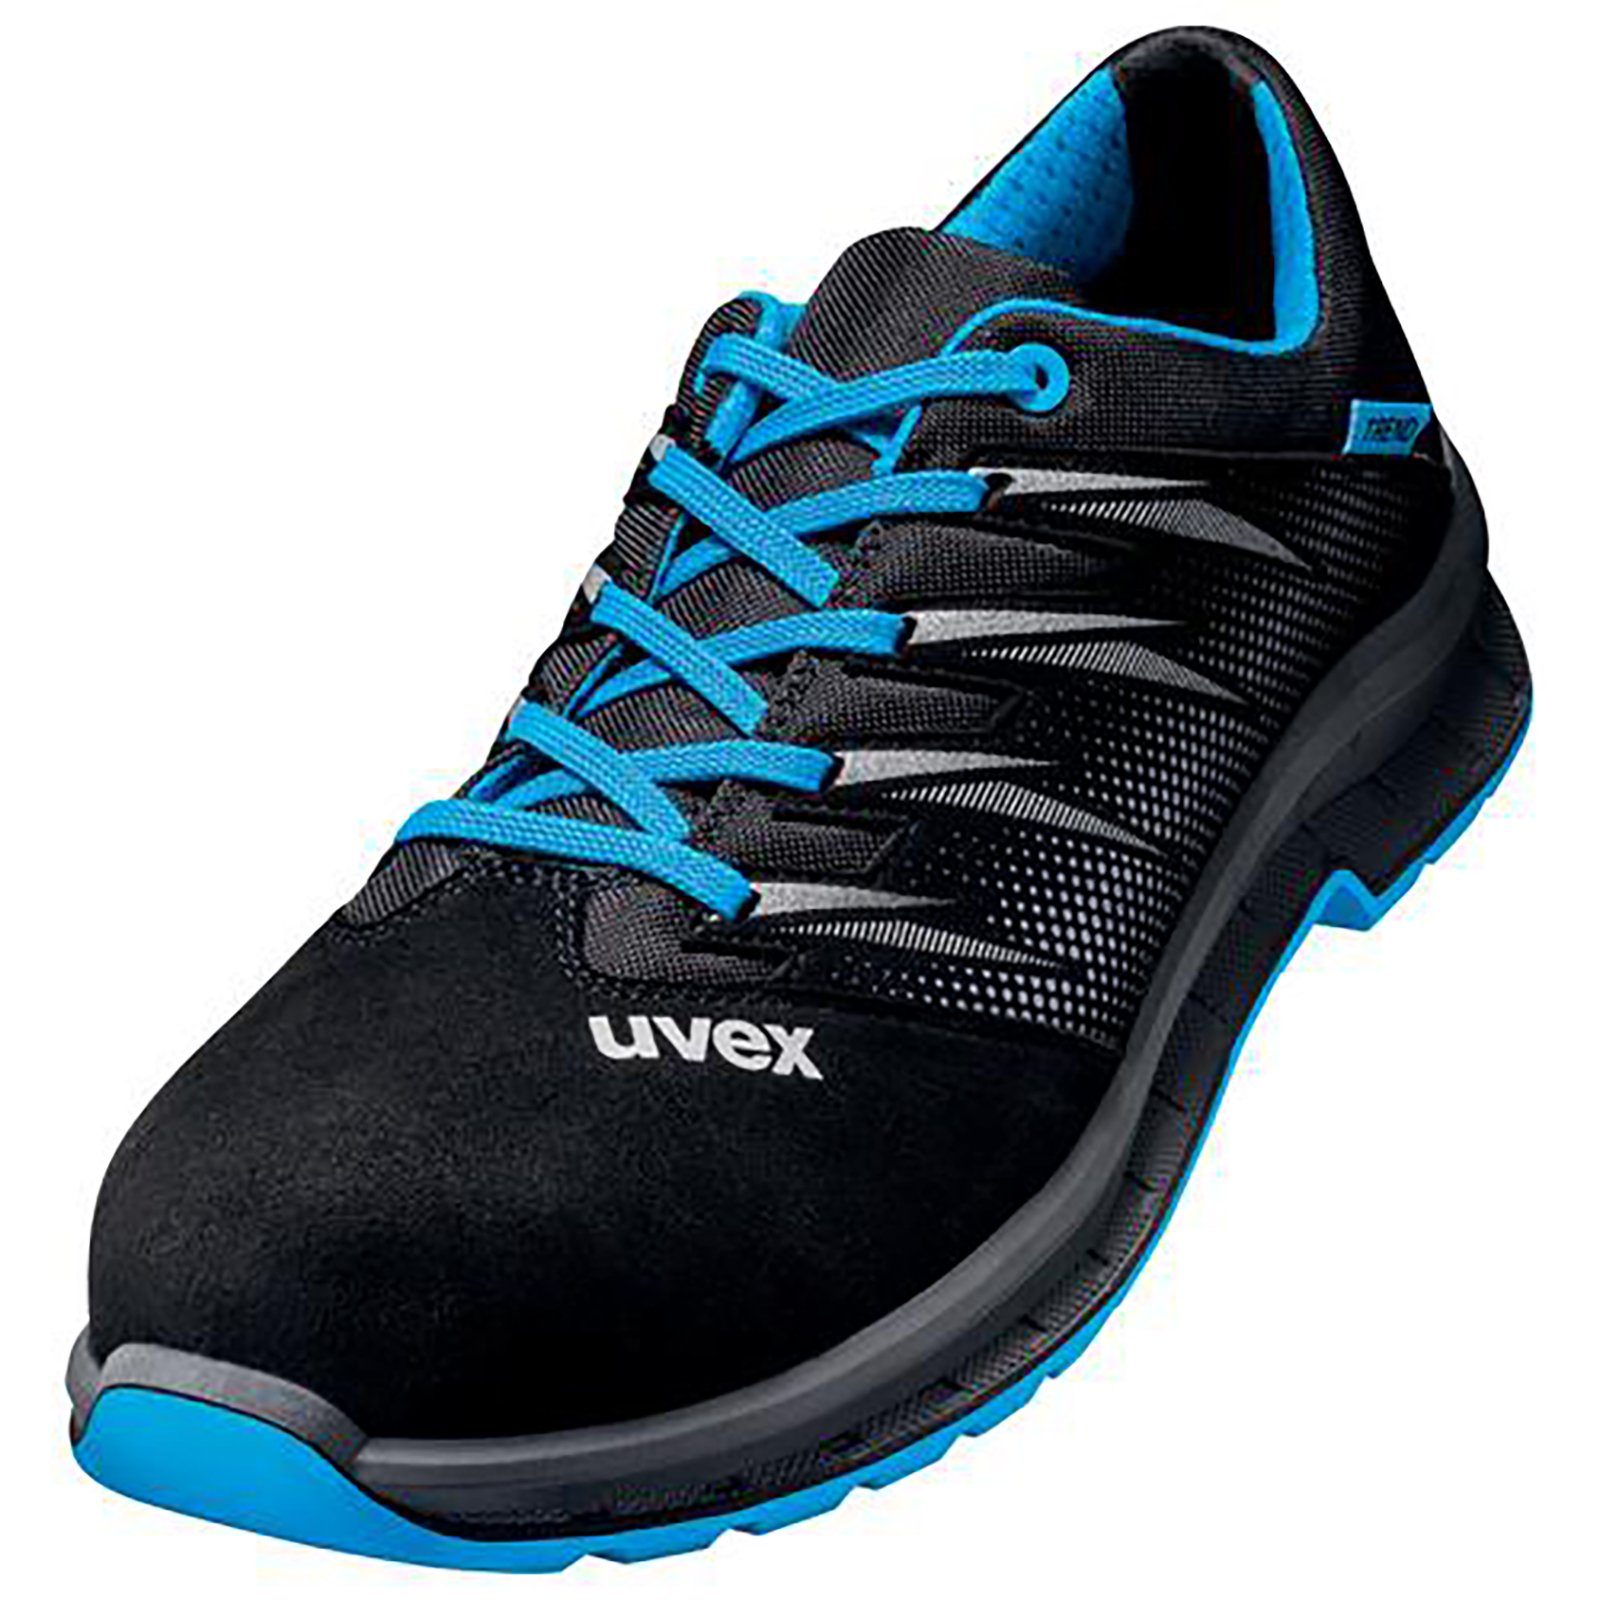 Uvex 2 10 schwarz trend blau, Weite Halbschuhe Sicherheitsschuh S2